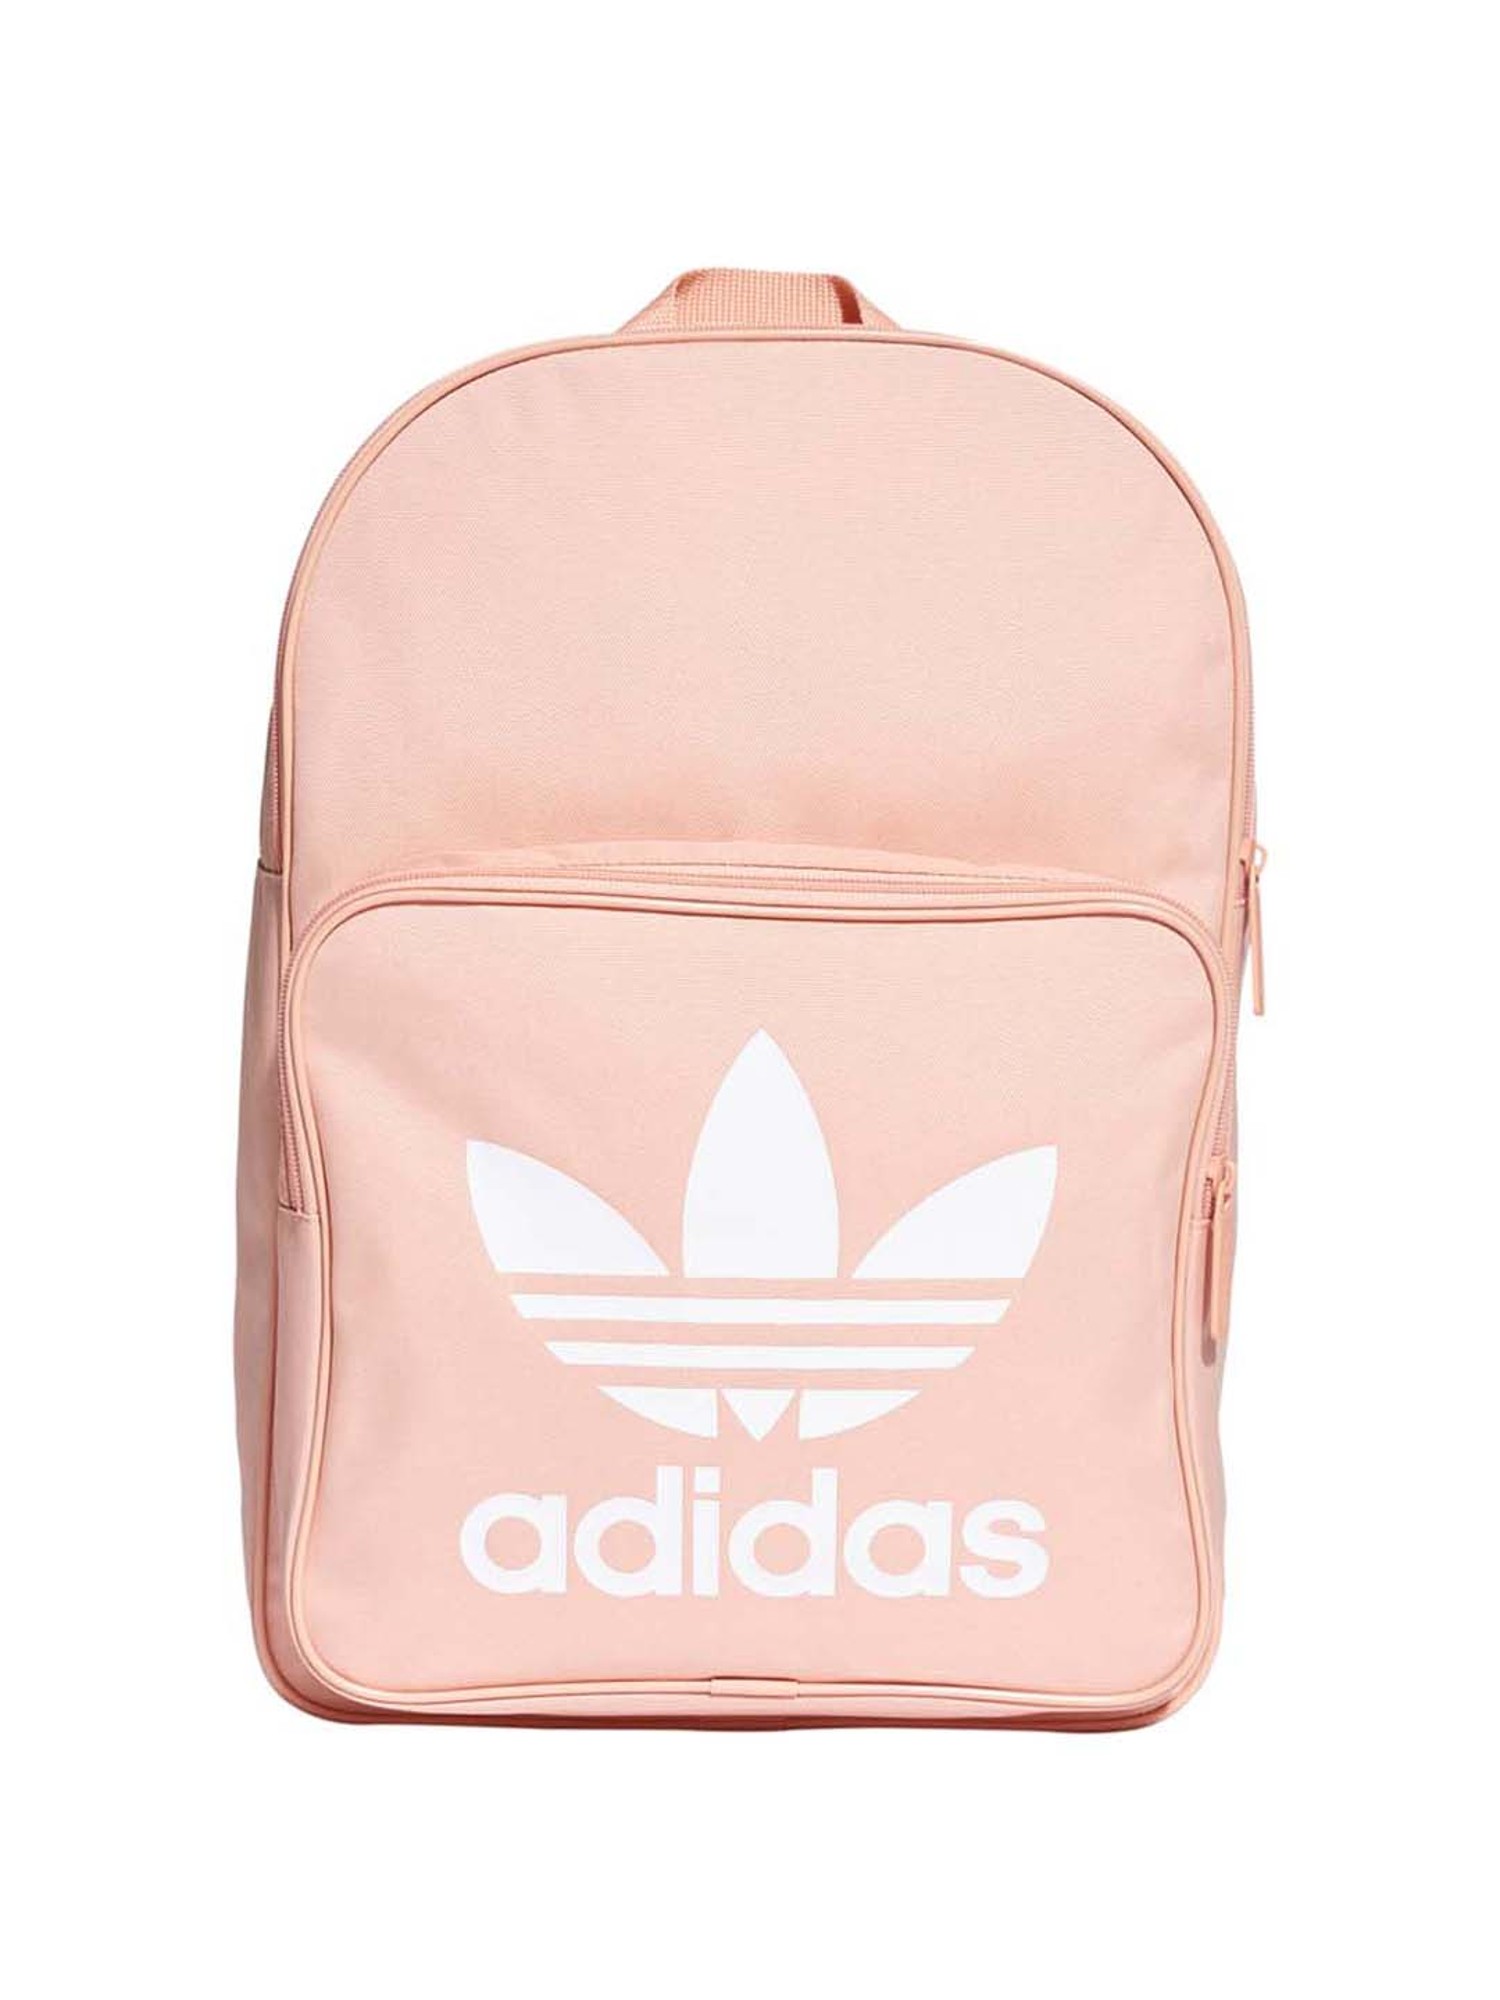 Adidas Male Baby School Bag